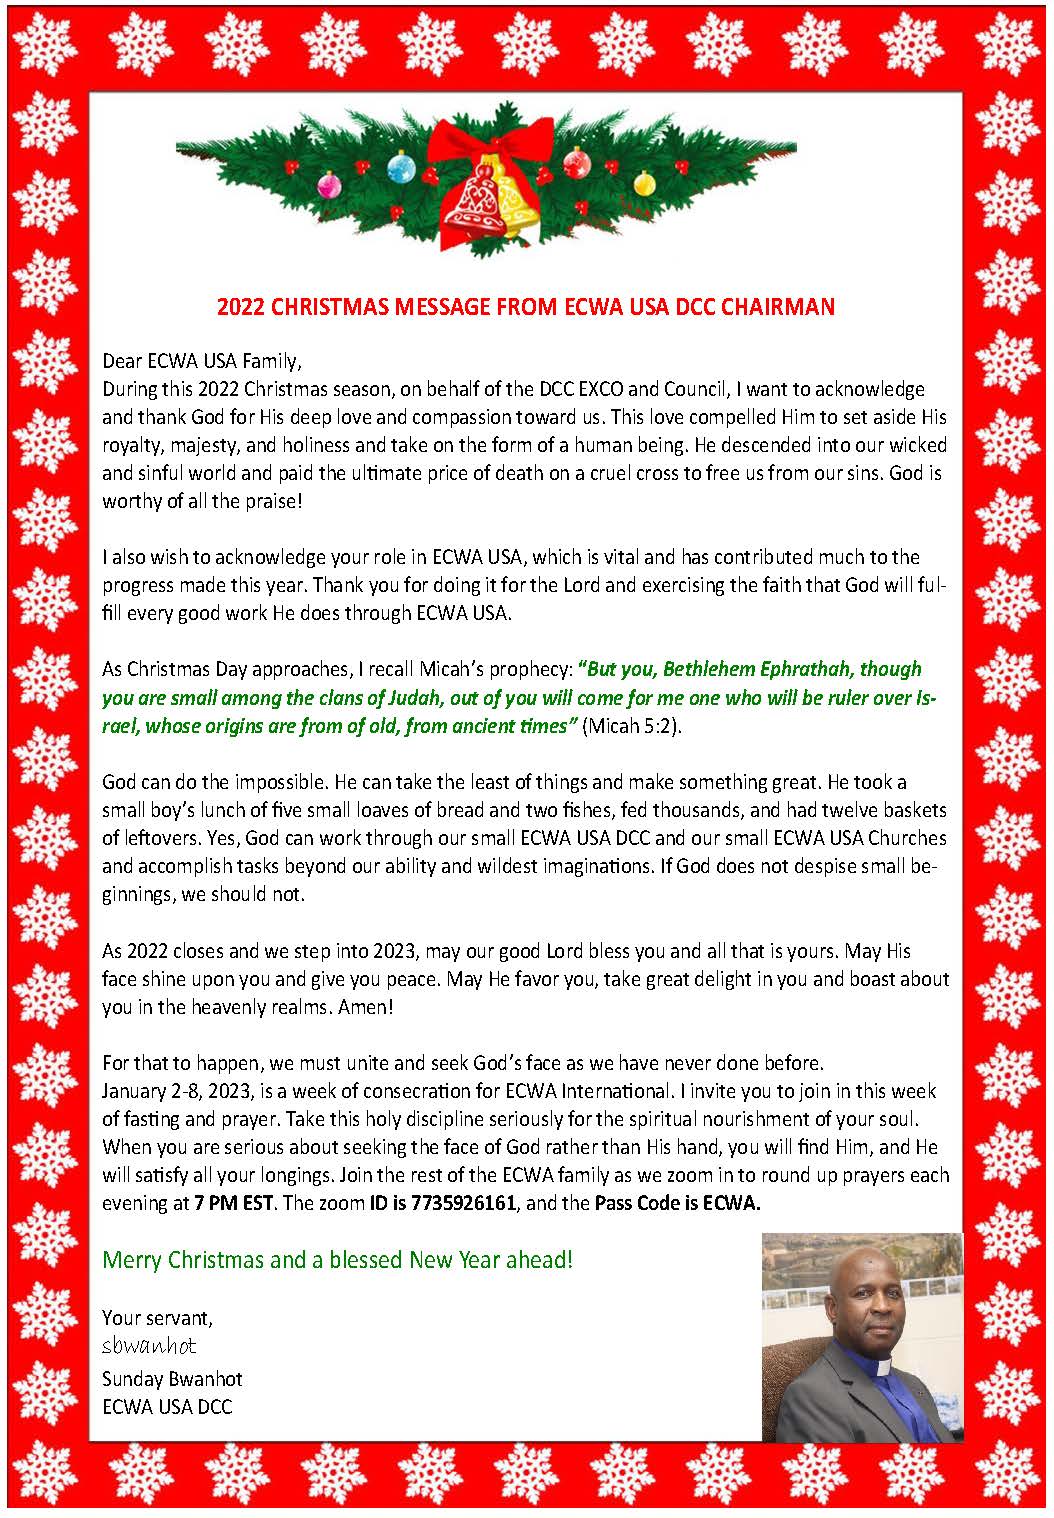 2022 Christmas Message to ECWA USA DCC